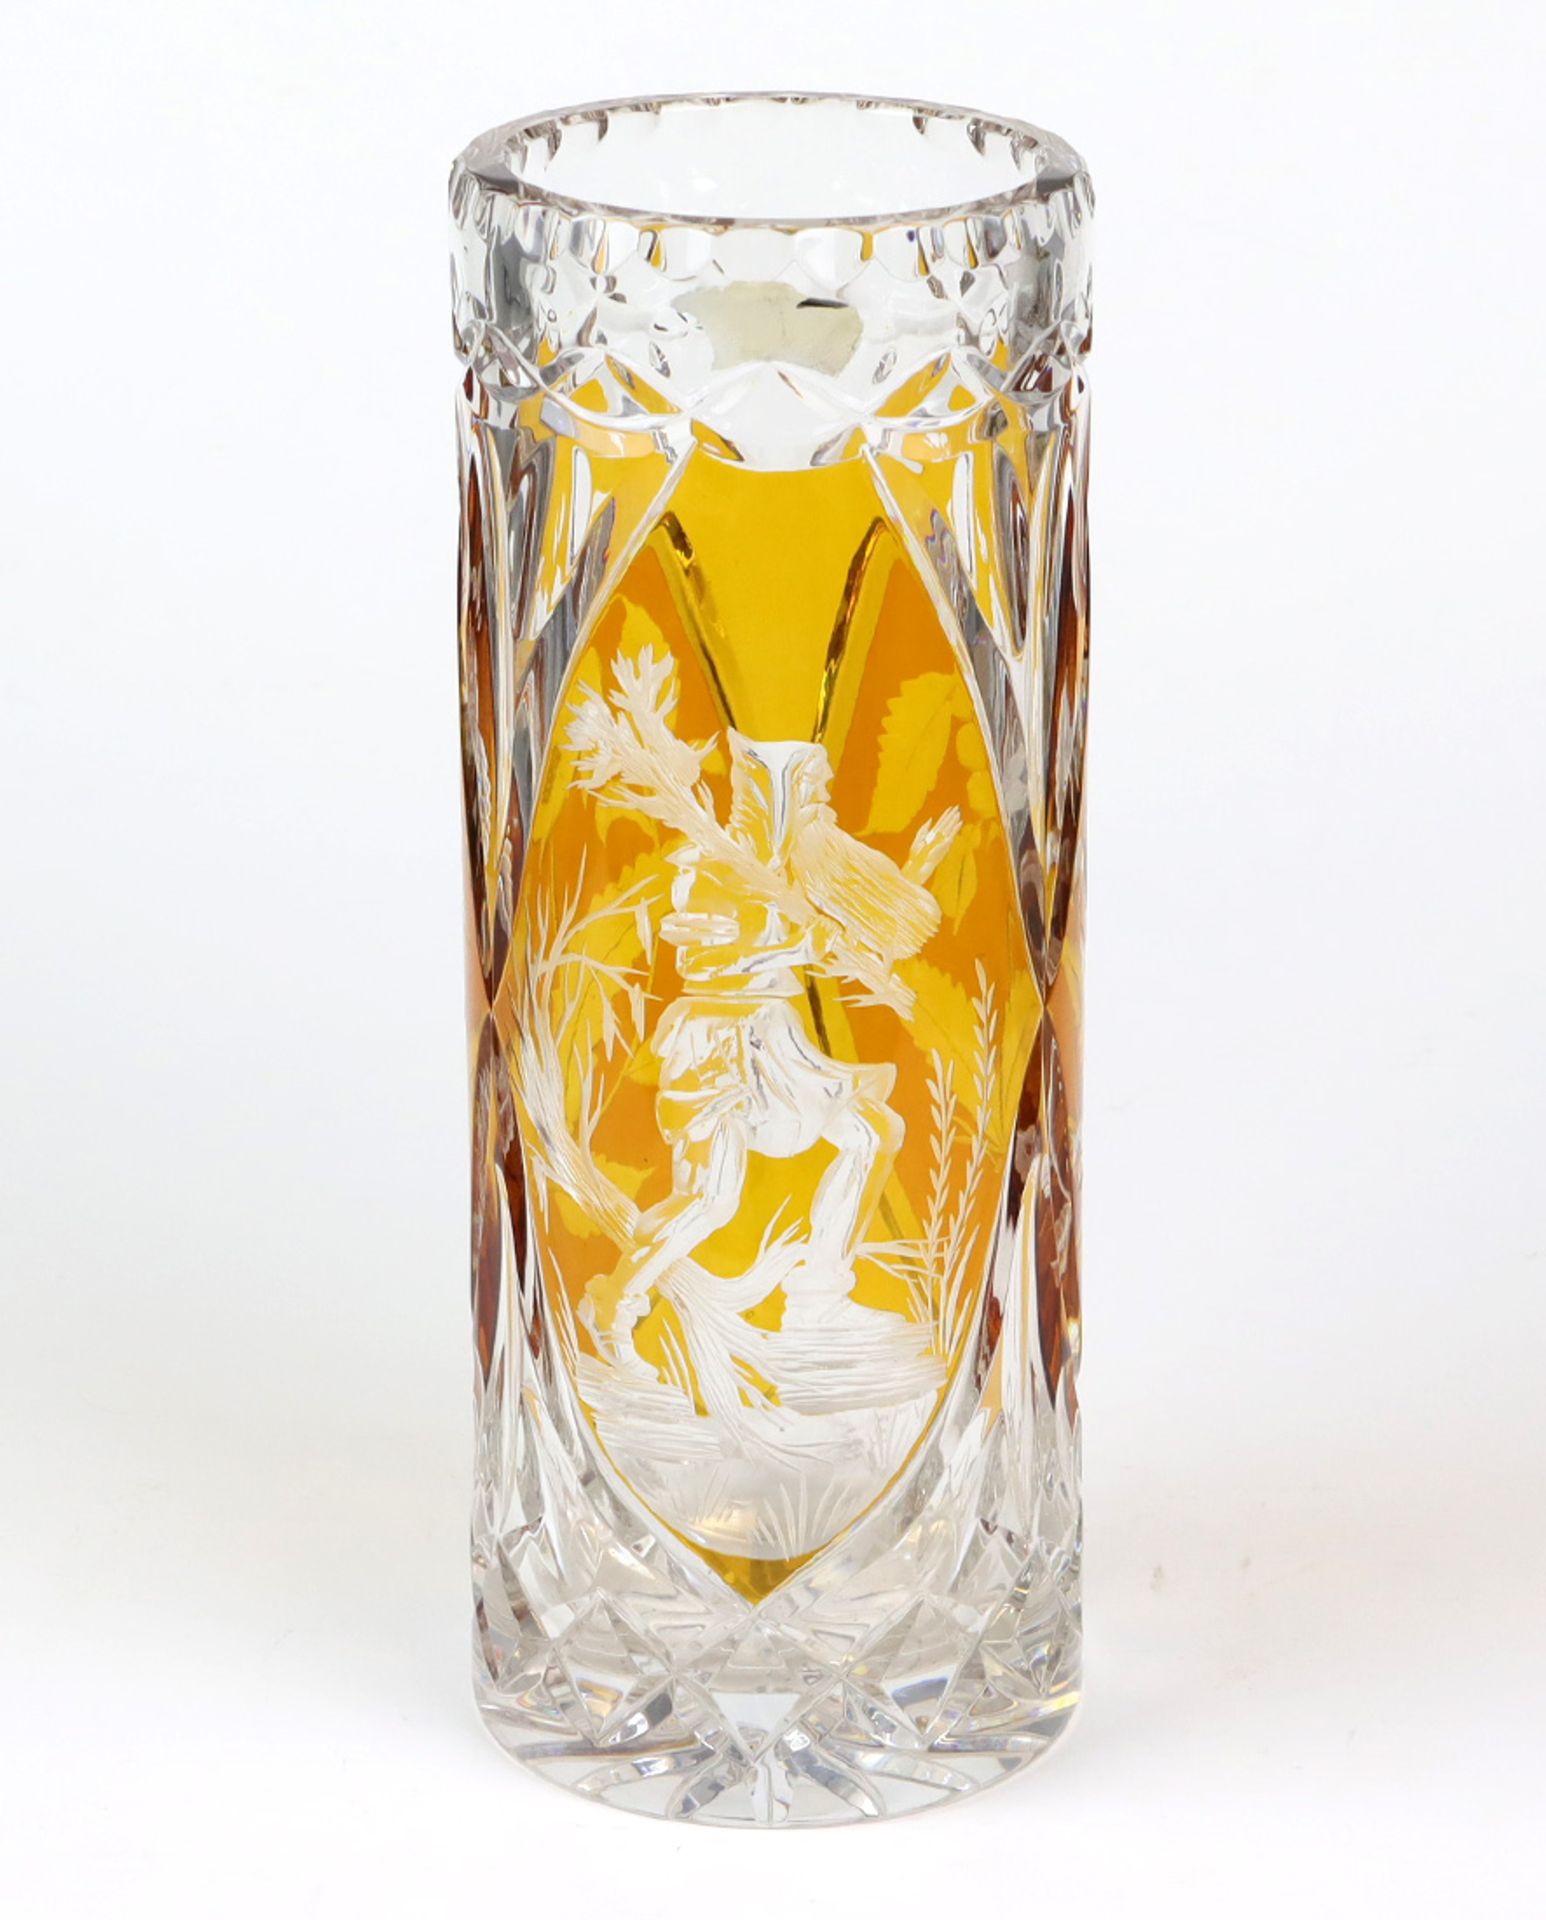 Stangenvase mit Rübezahlfarbloses Kristallglas mundgeblasen, partiell bernsteinfarbig